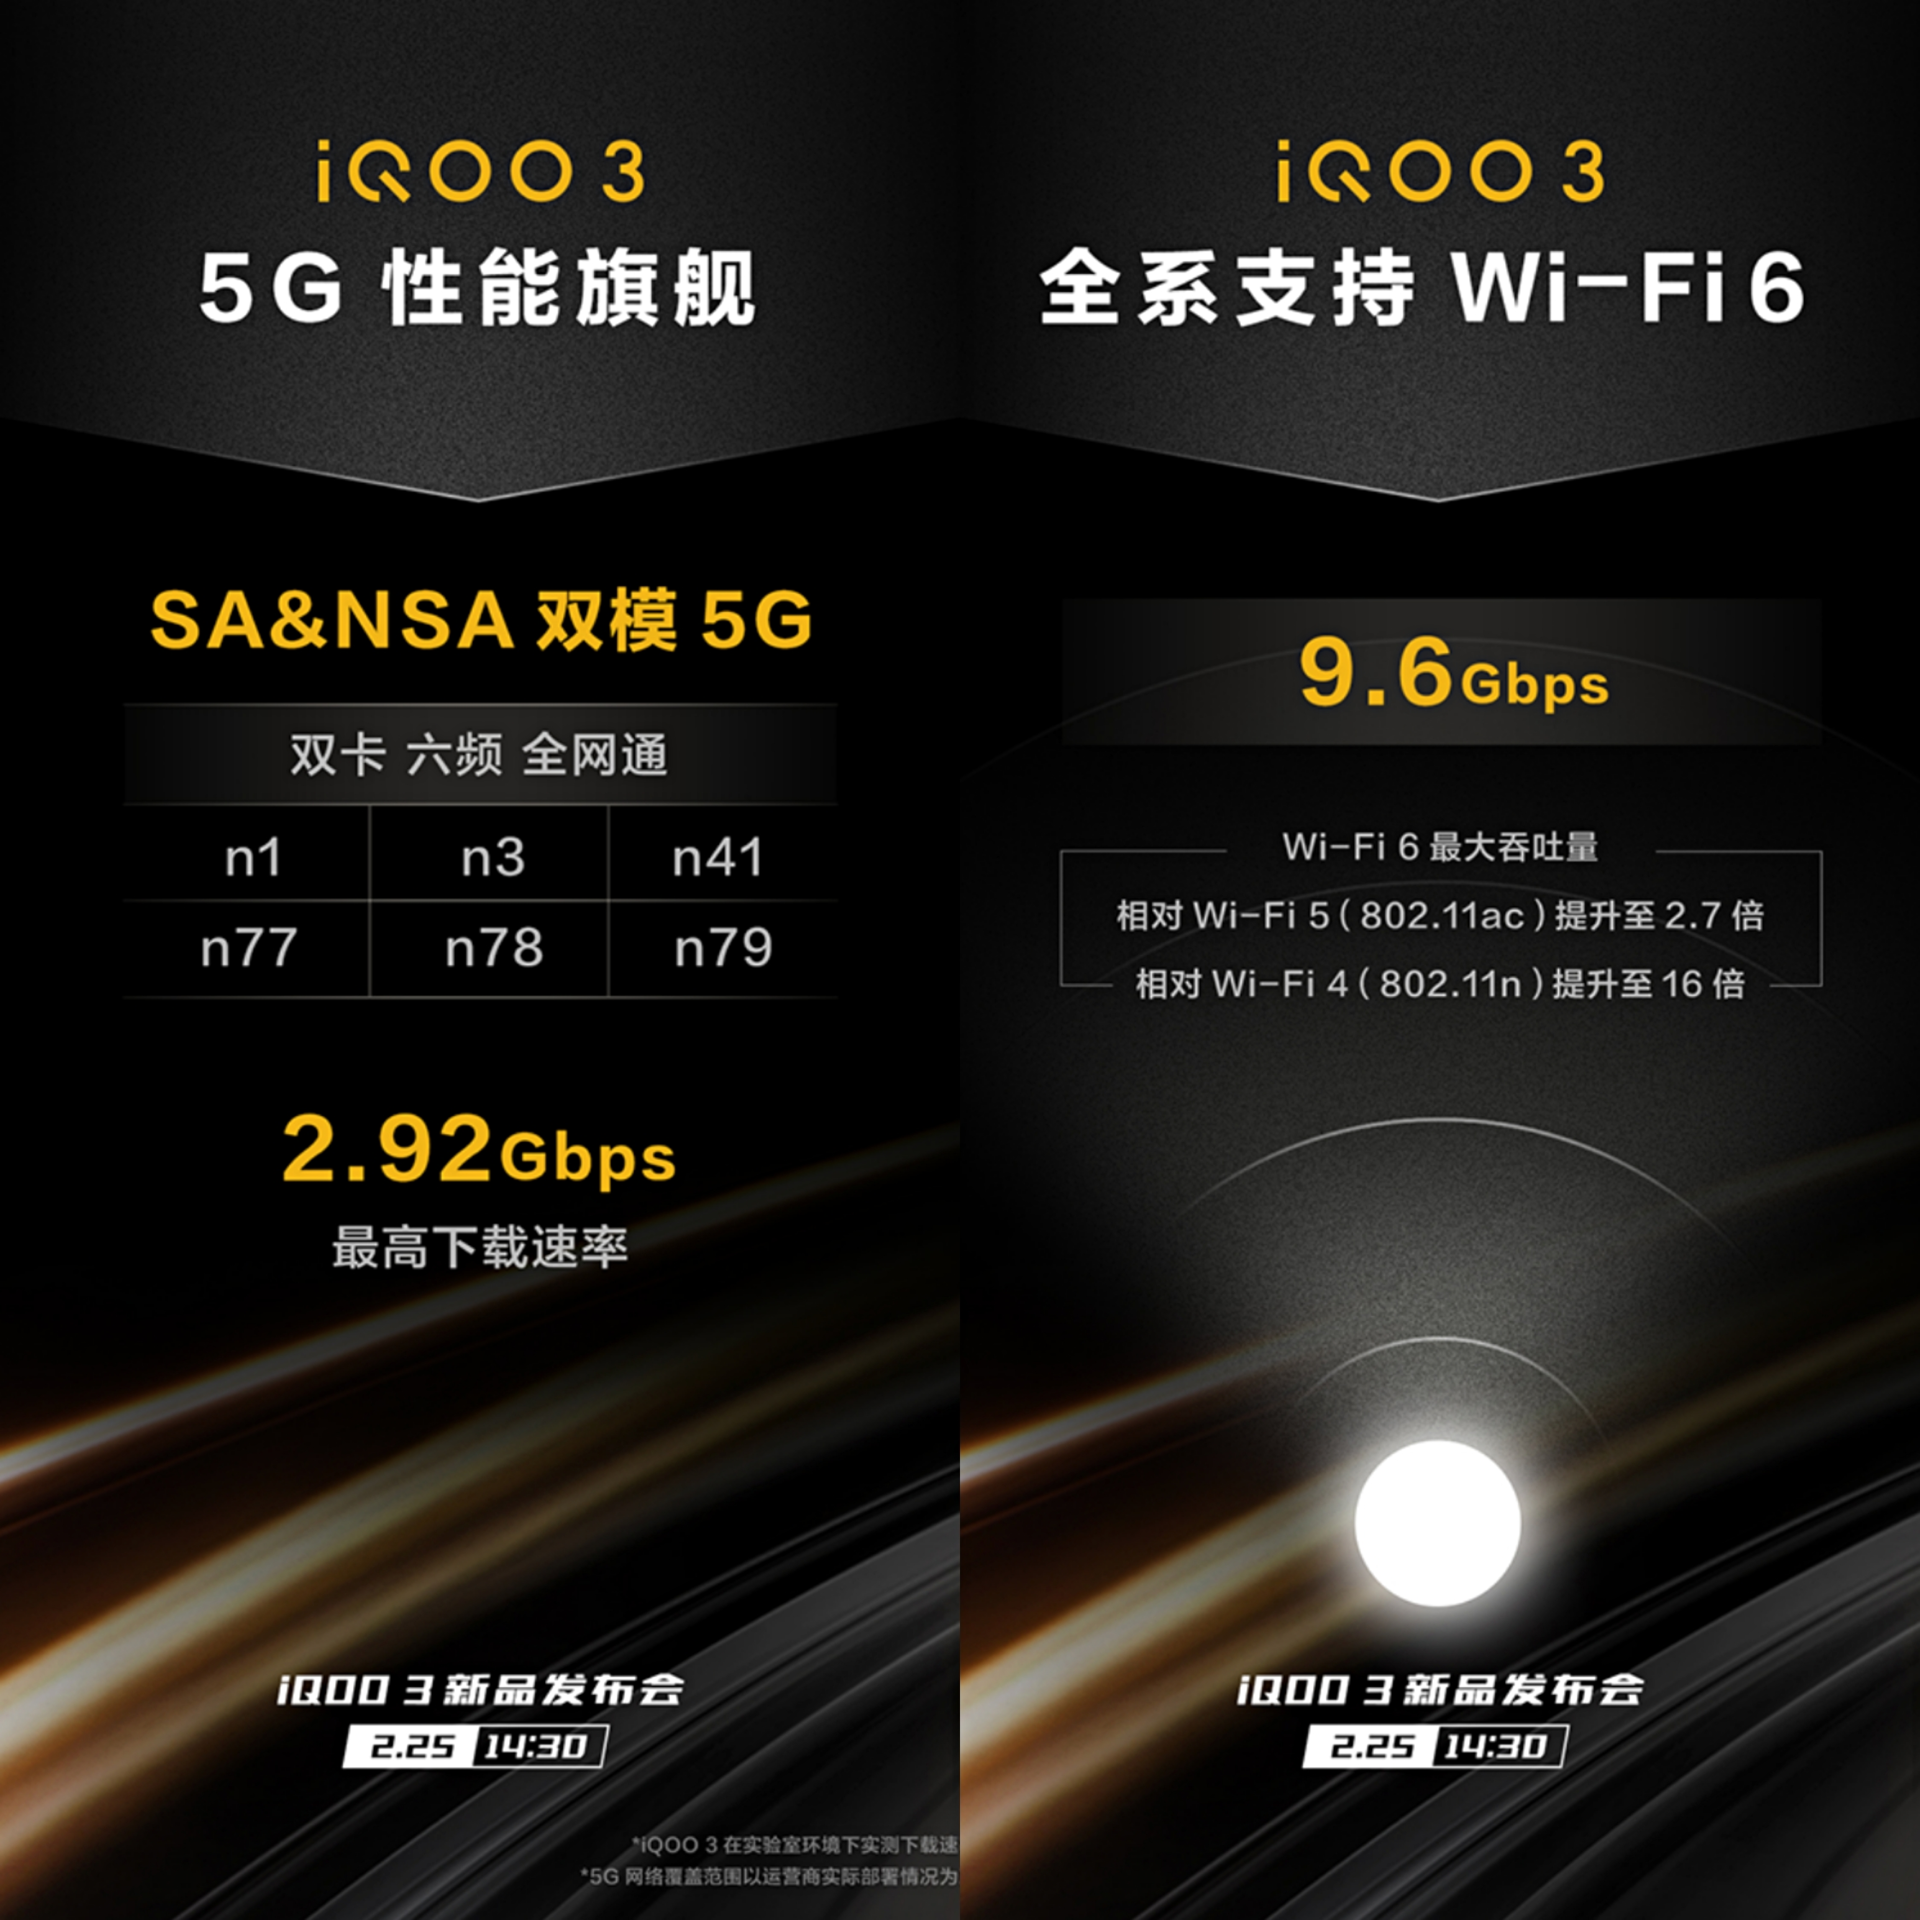 iqoo 3可以实现sa与nsa两种组网模式,5g网络环境下最高下载速率可以